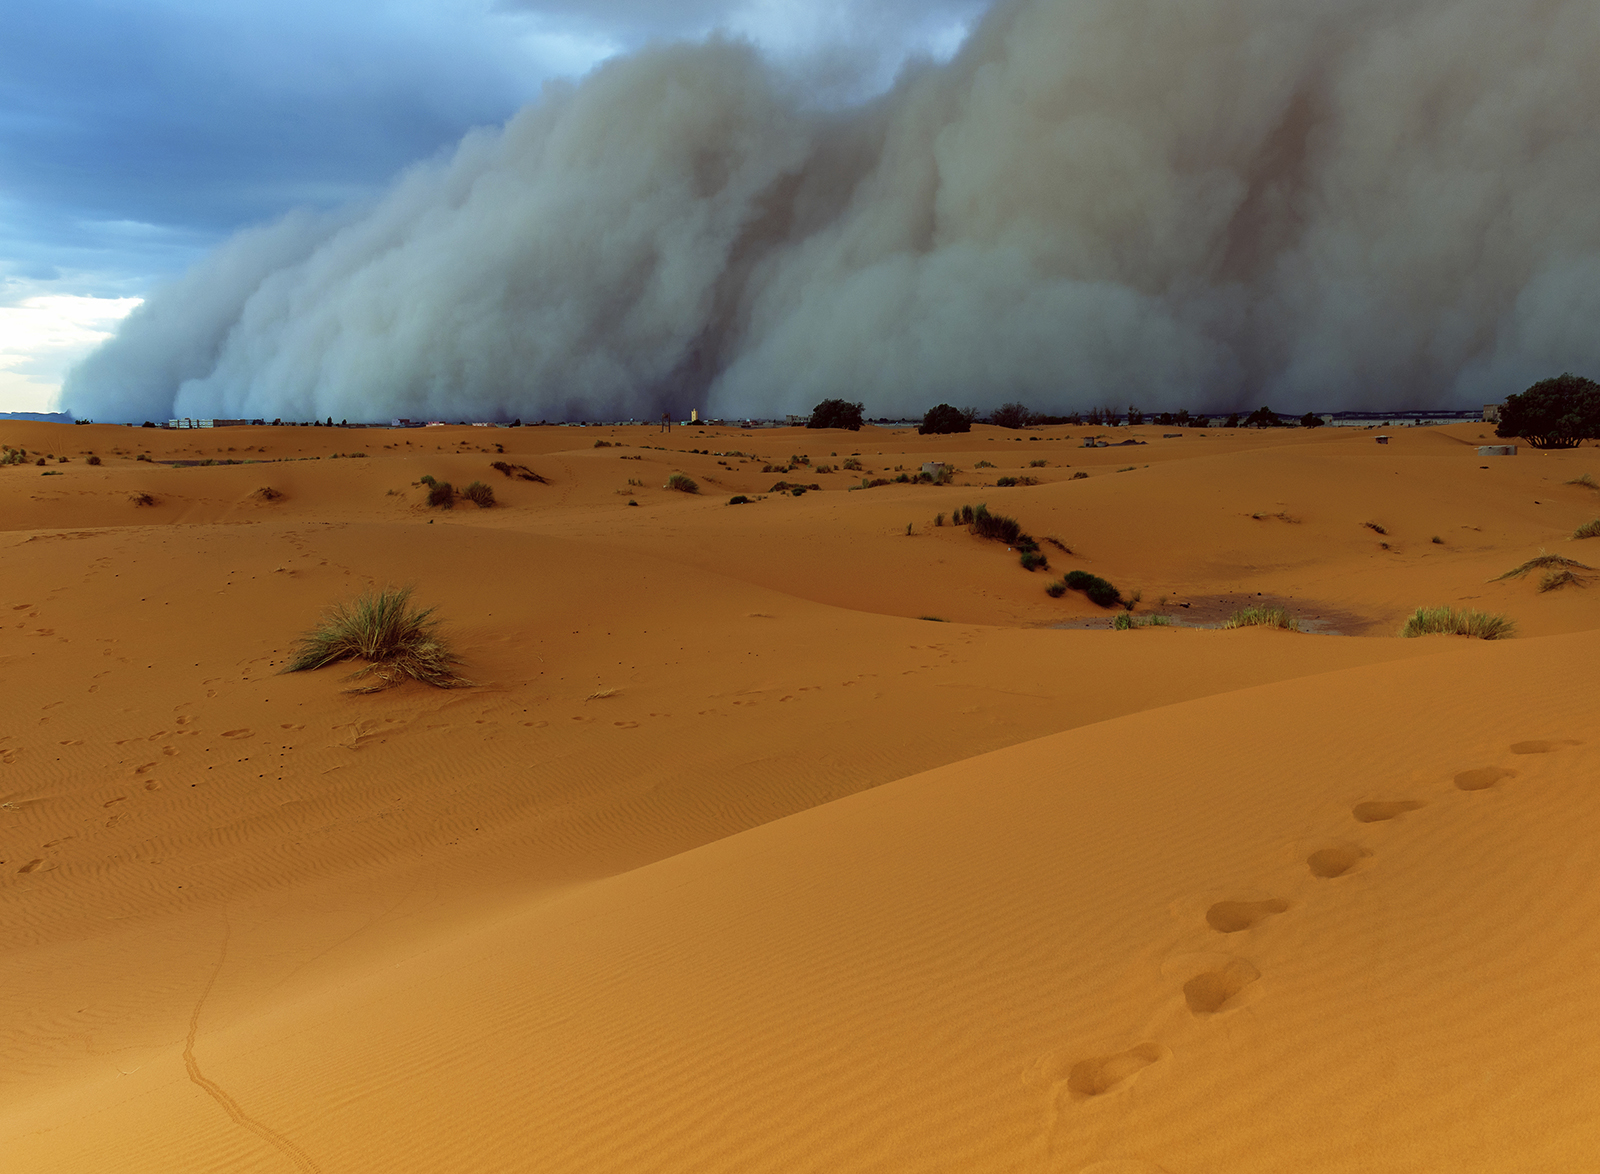 Sandstorm